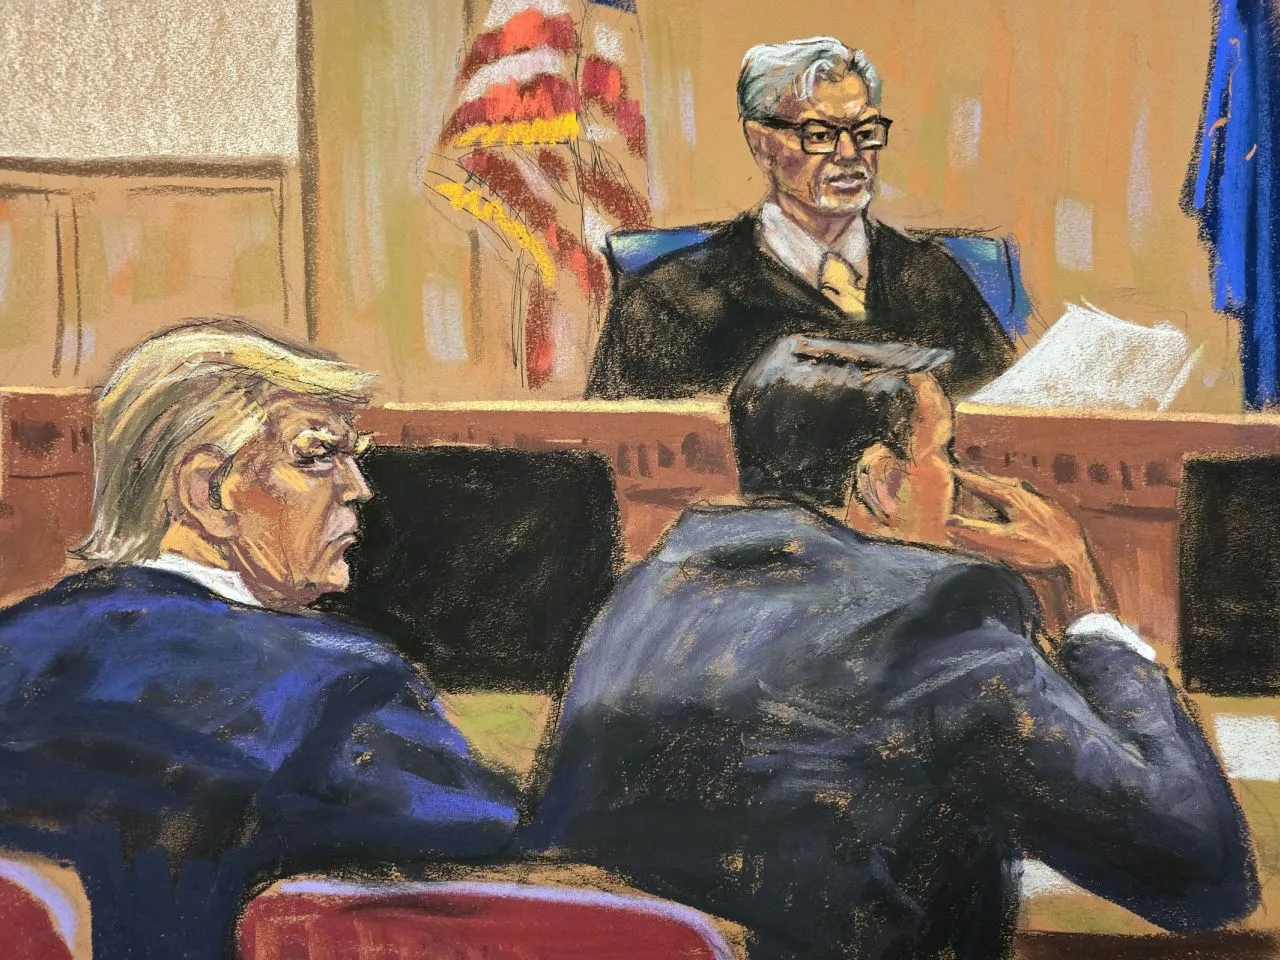 Трамп у суді